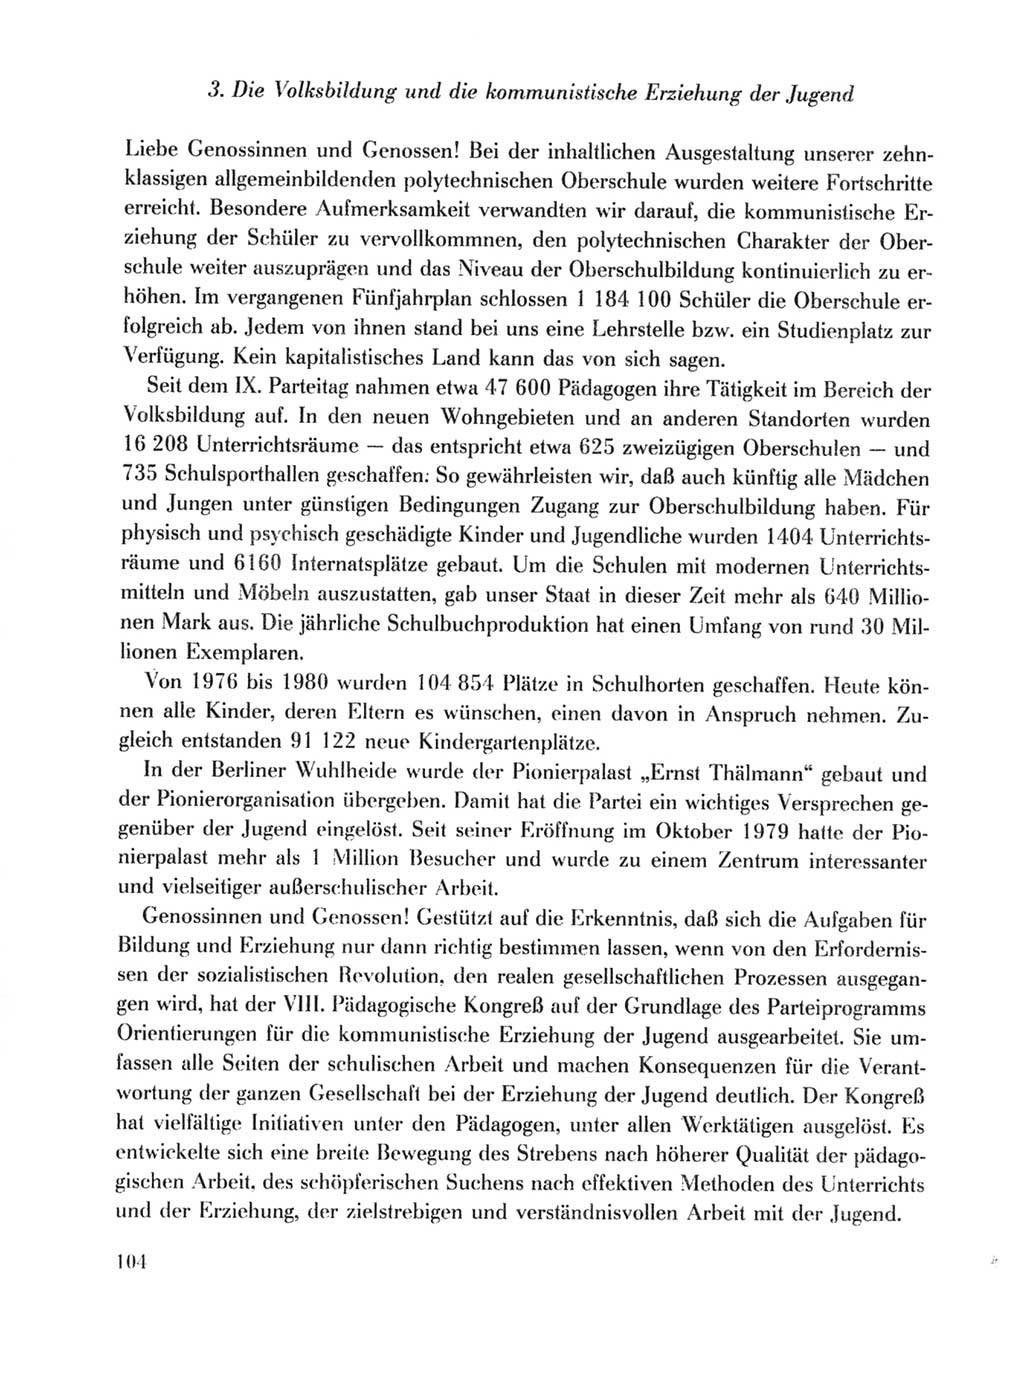 Protokoll der Verhandlungen des Ⅹ. Parteitages der Sozialistischen Einheitspartei Deutschlands (SED) [Deutsche Demokratische Republik (DDR)] 1981, Band 1, Seite 104 (Prot. Verh. Ⅹ. PT SED DDR 1981, Bd. 1, S. 104)